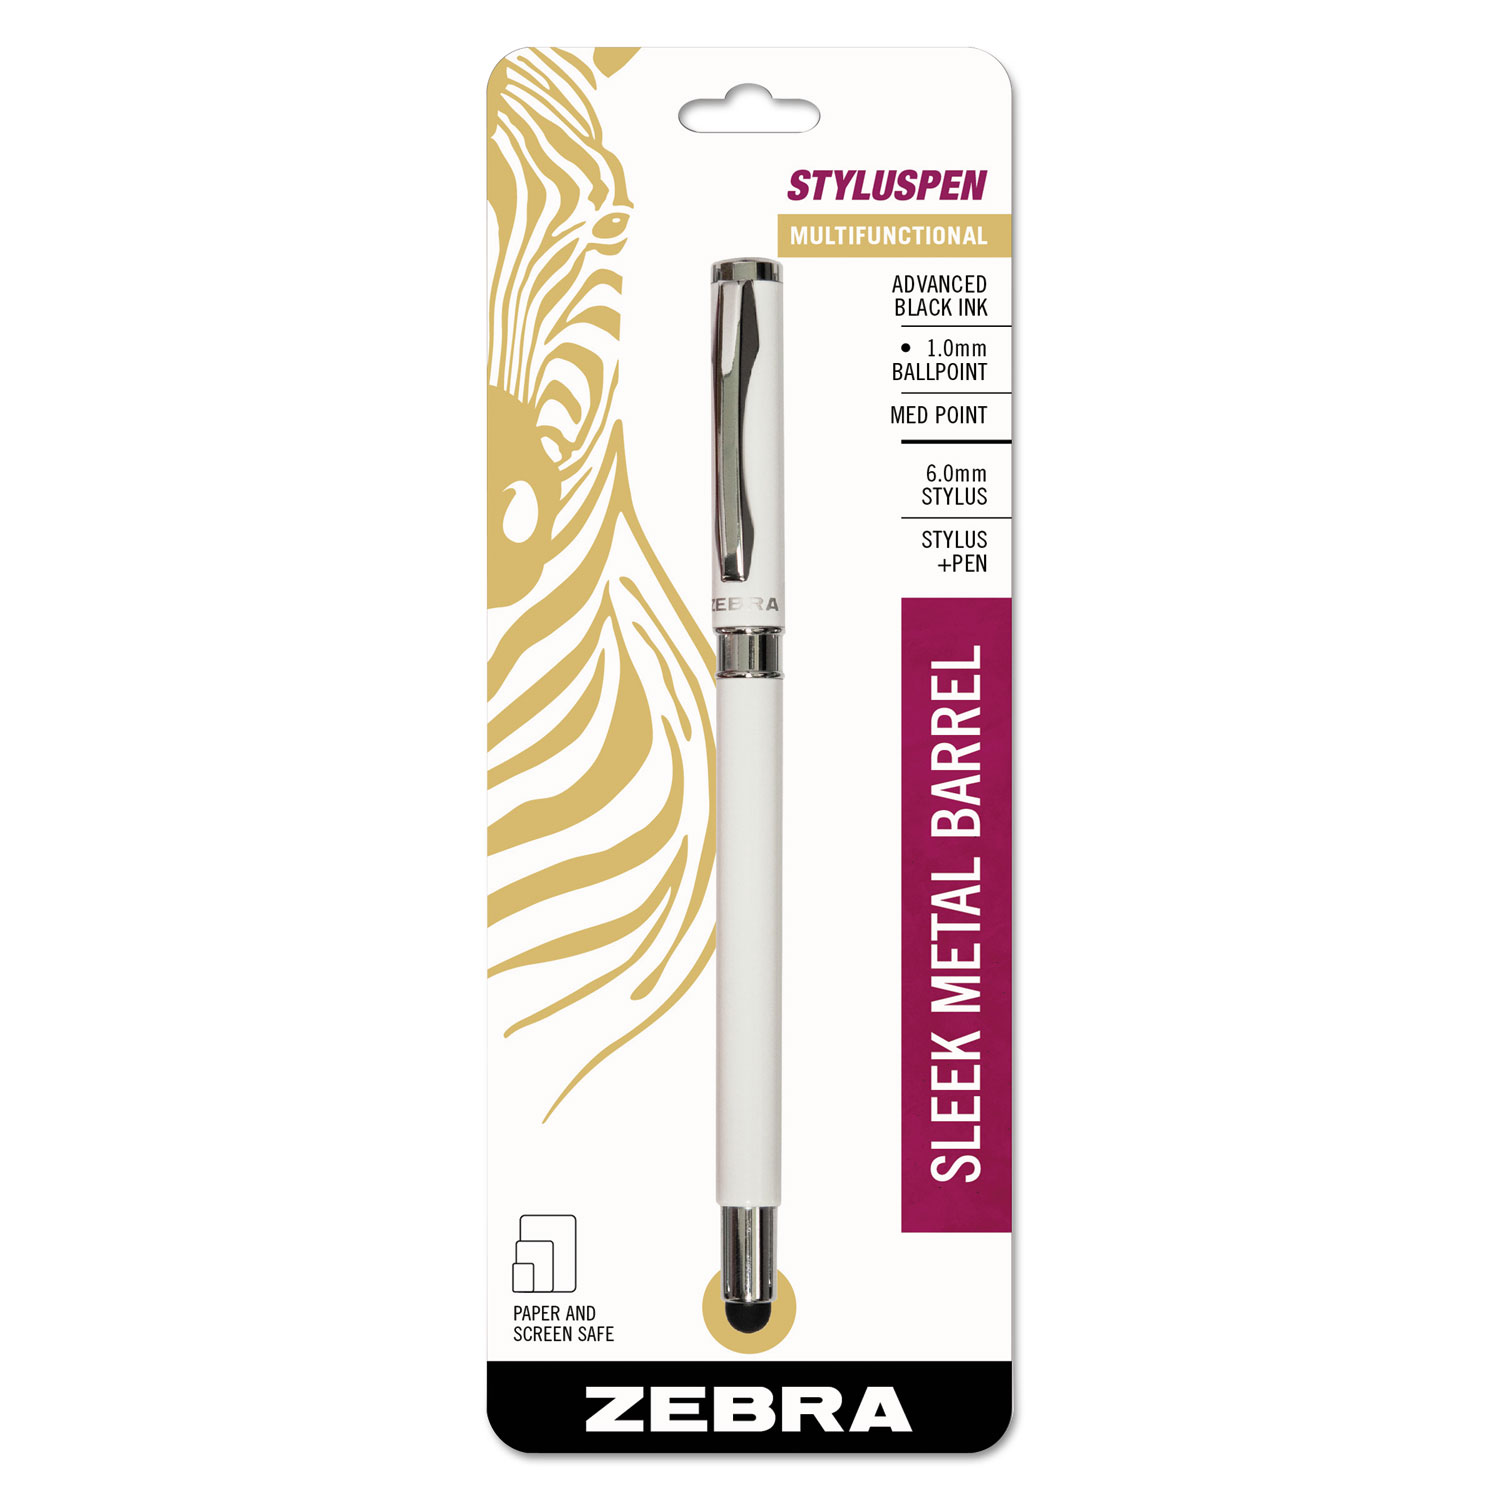  Zebra 33201 StylusPen Capped Ballpoint Pen/Stylus, White (ZEB33201) 